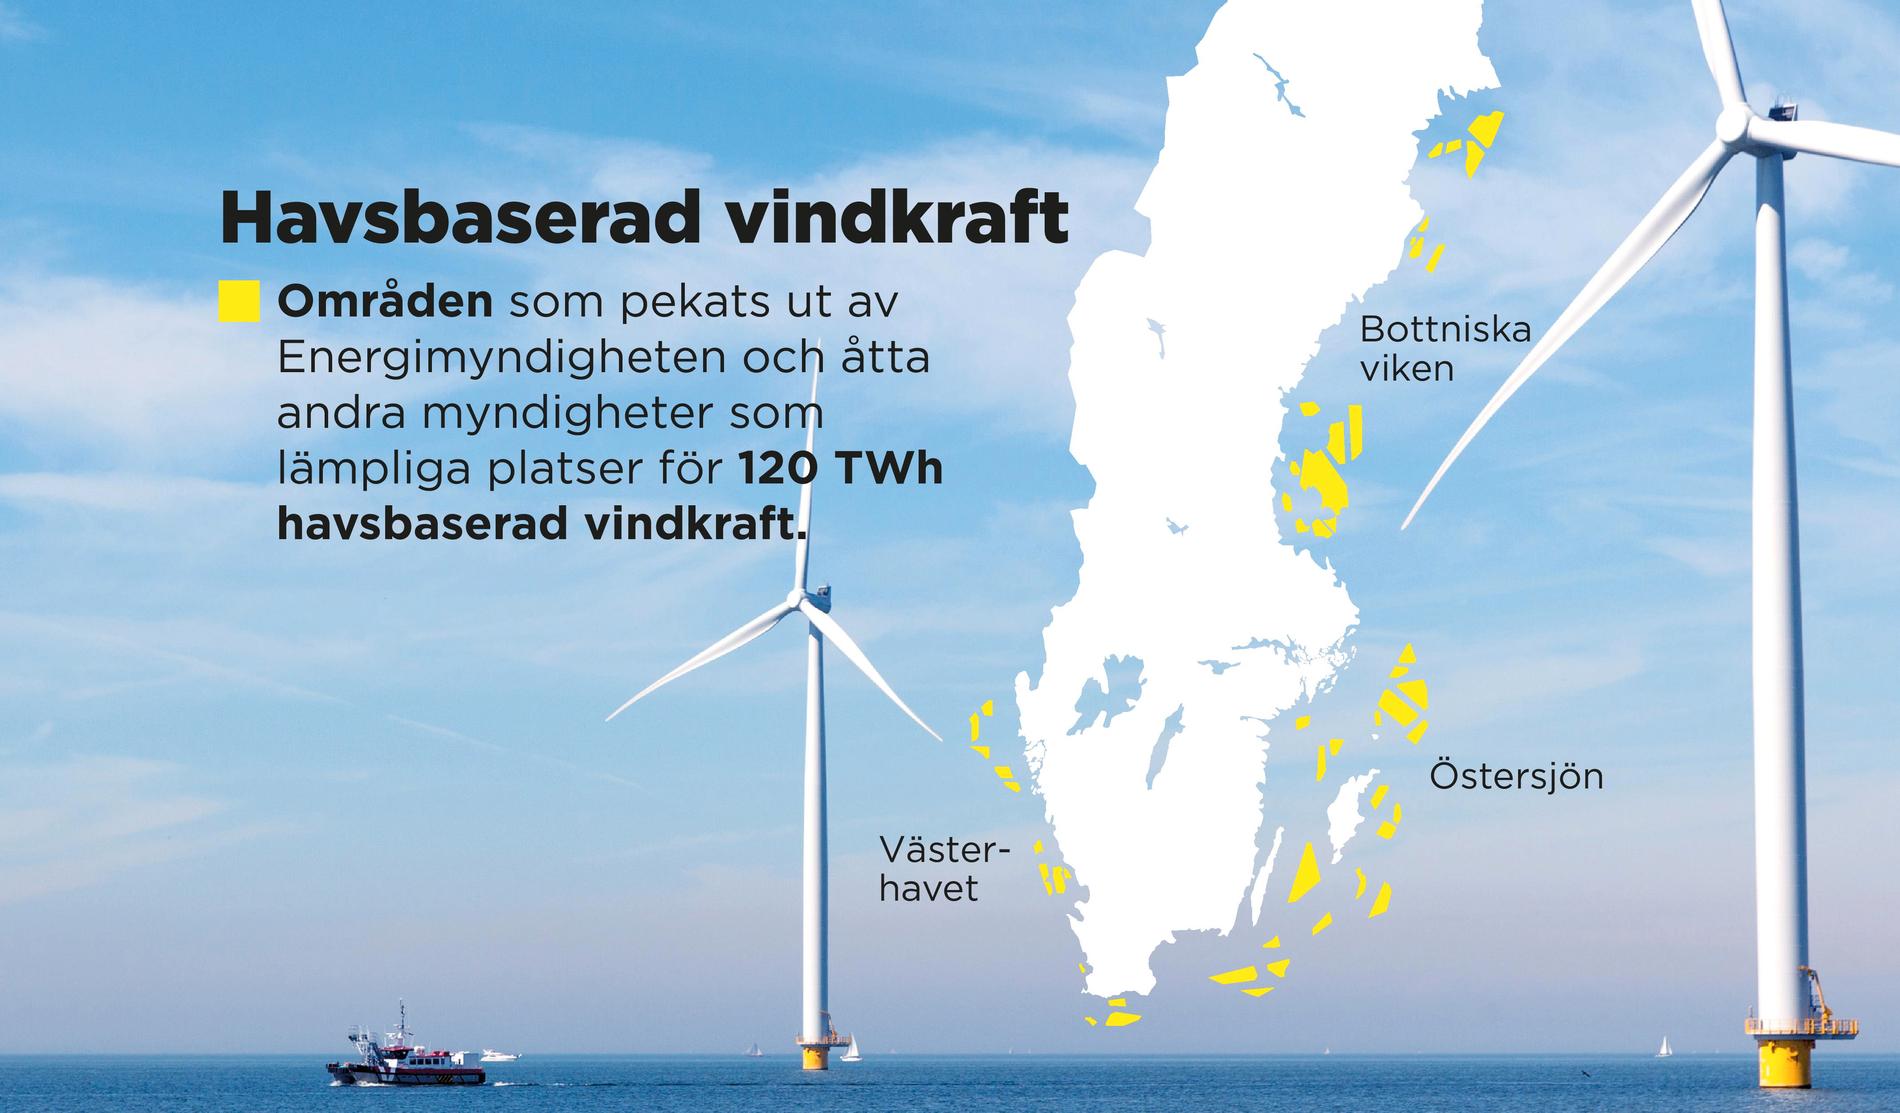 Områden som pekats ut av Energimyndigheten och åtta andra myndigheter som lämpliga platser för 120 TWh havsbaserad vindkraft.